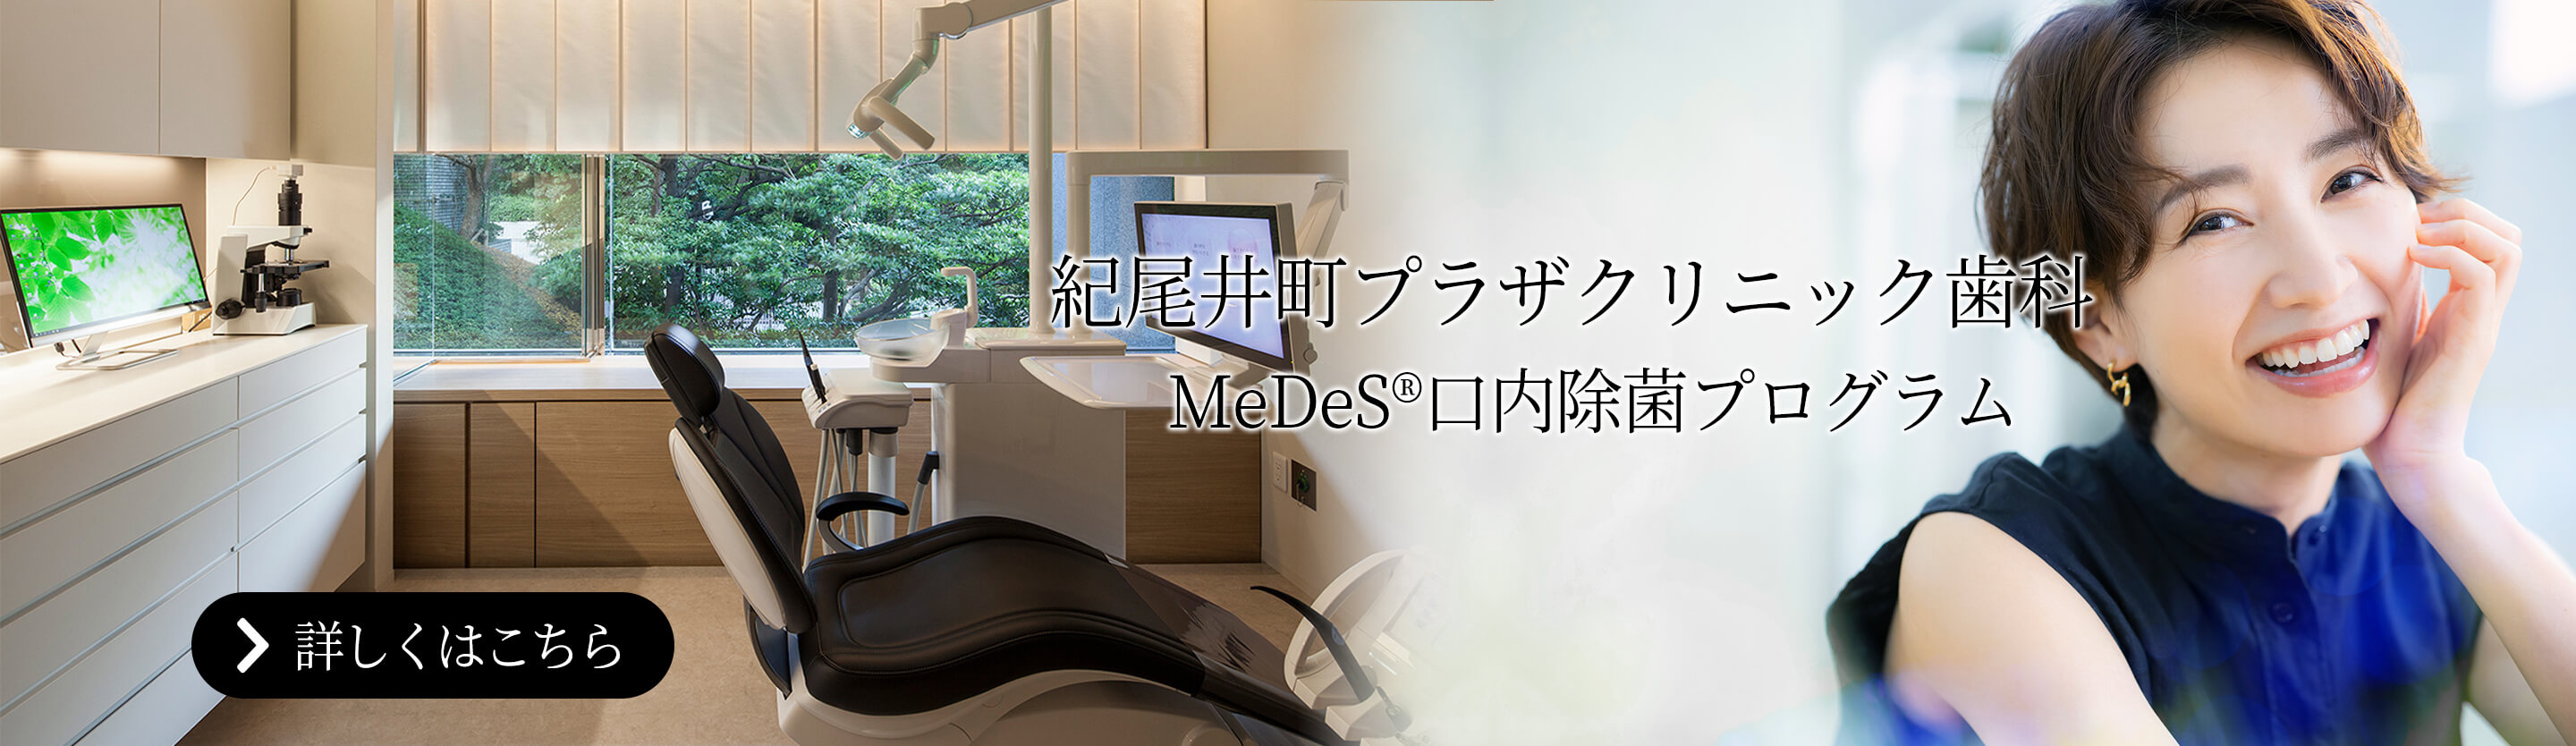 紀尾井町プラザクリニック歯科 MeDeS®口内除菌プログラム